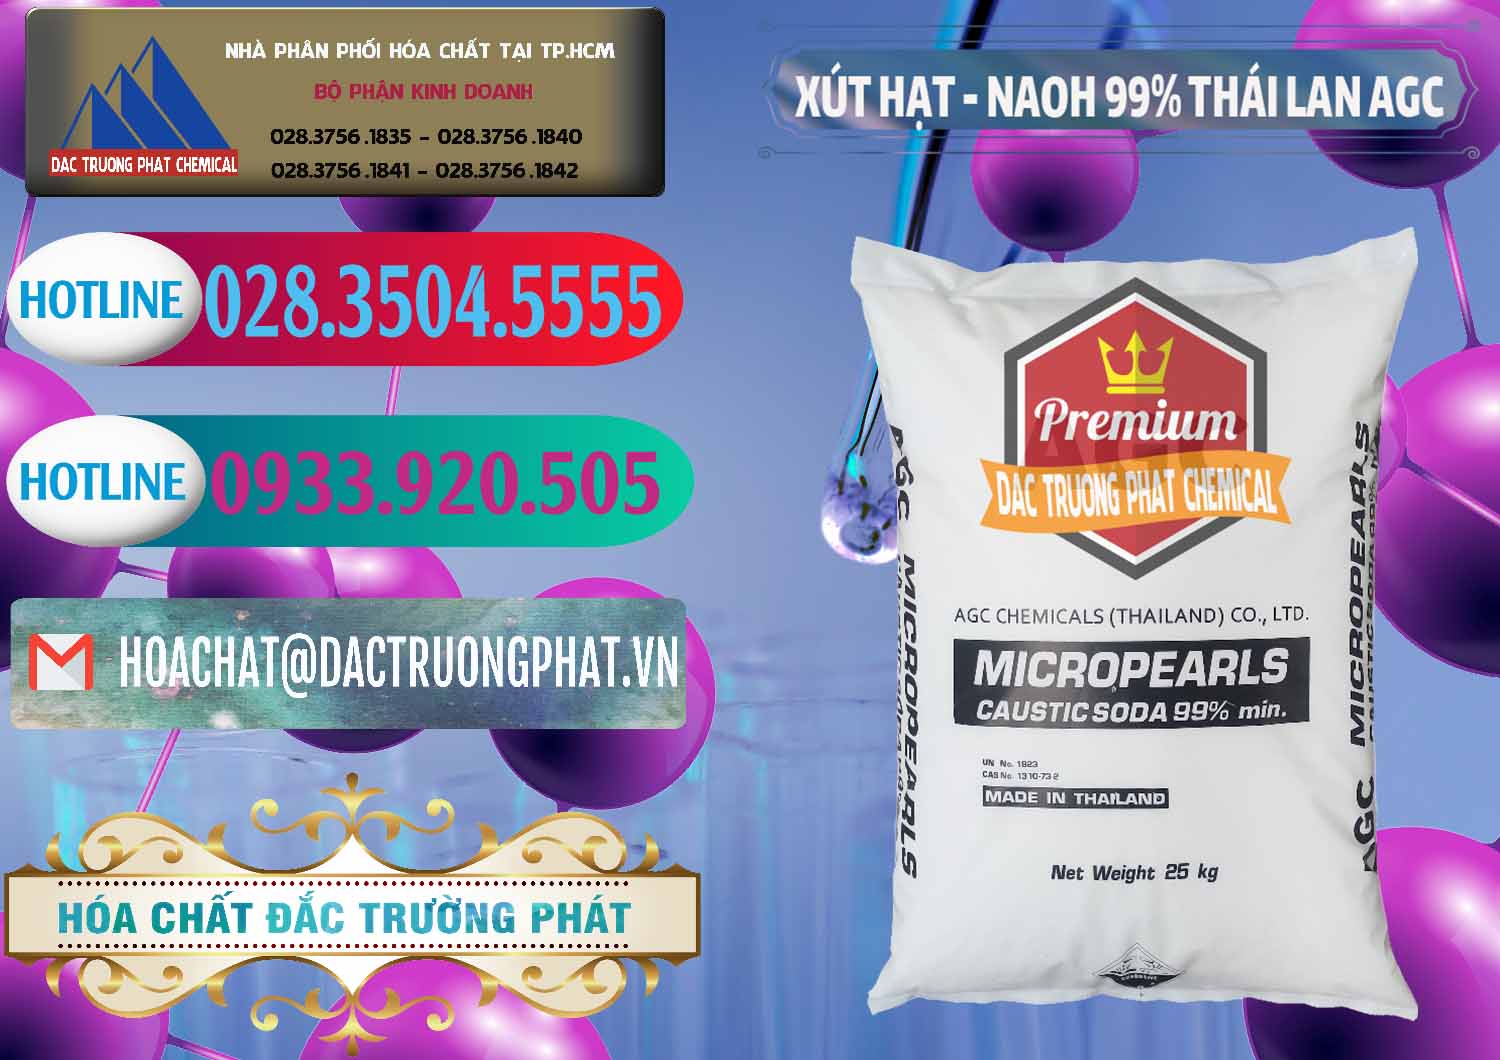 Đơn vị chuyên kinh doanh và bán Xút Hạt - NaOH Bột 99% AGC Thái Lan - 0168 - Công ty cung cấp và phân phối hóa chất tại TP.HCM - truongphat.vn